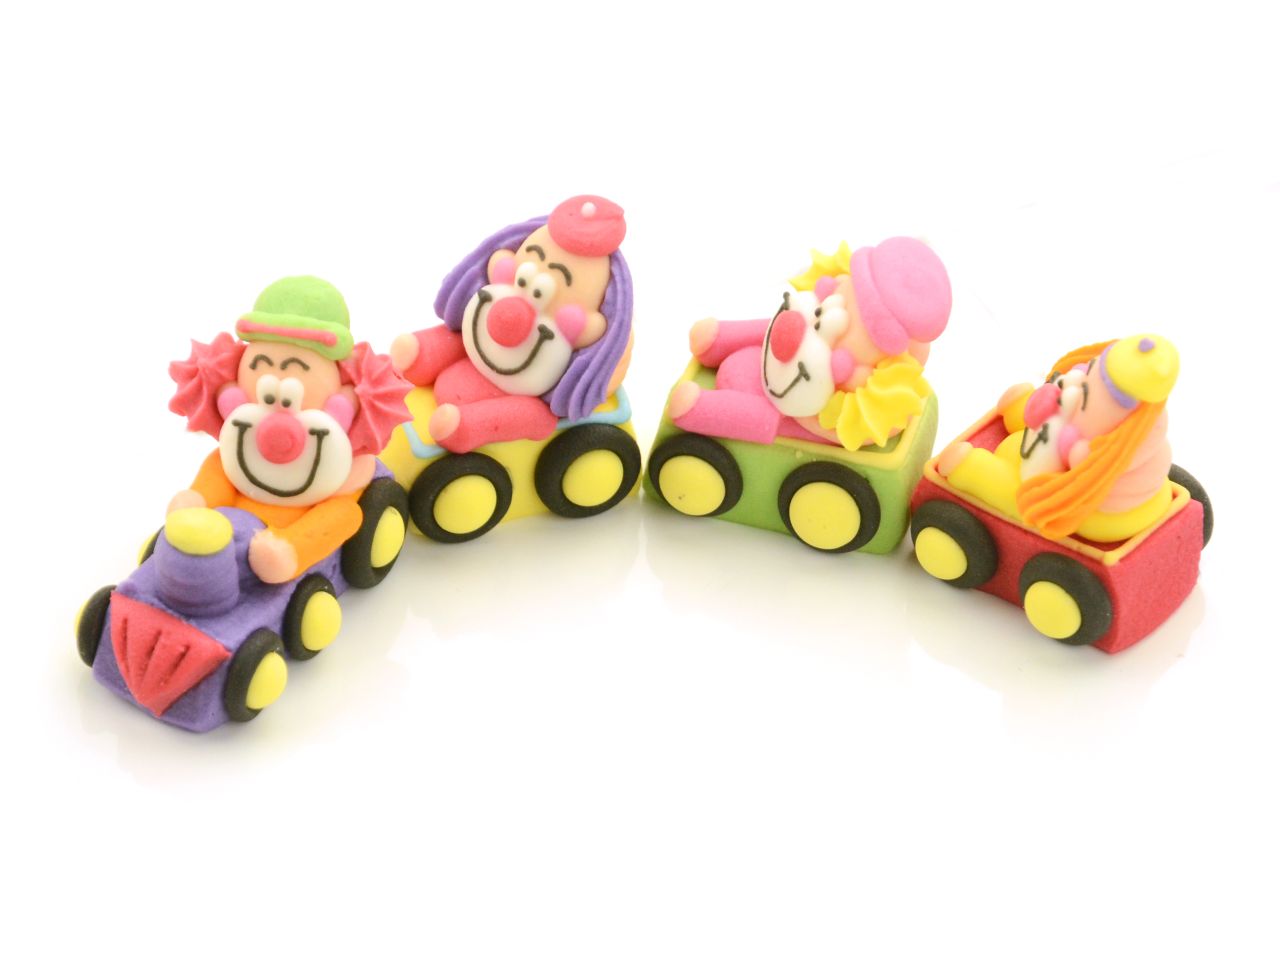 Zuckerfiguren Clowns im Zug, 4 Farben, 4 Stück à 40 x 25 x 35 mm